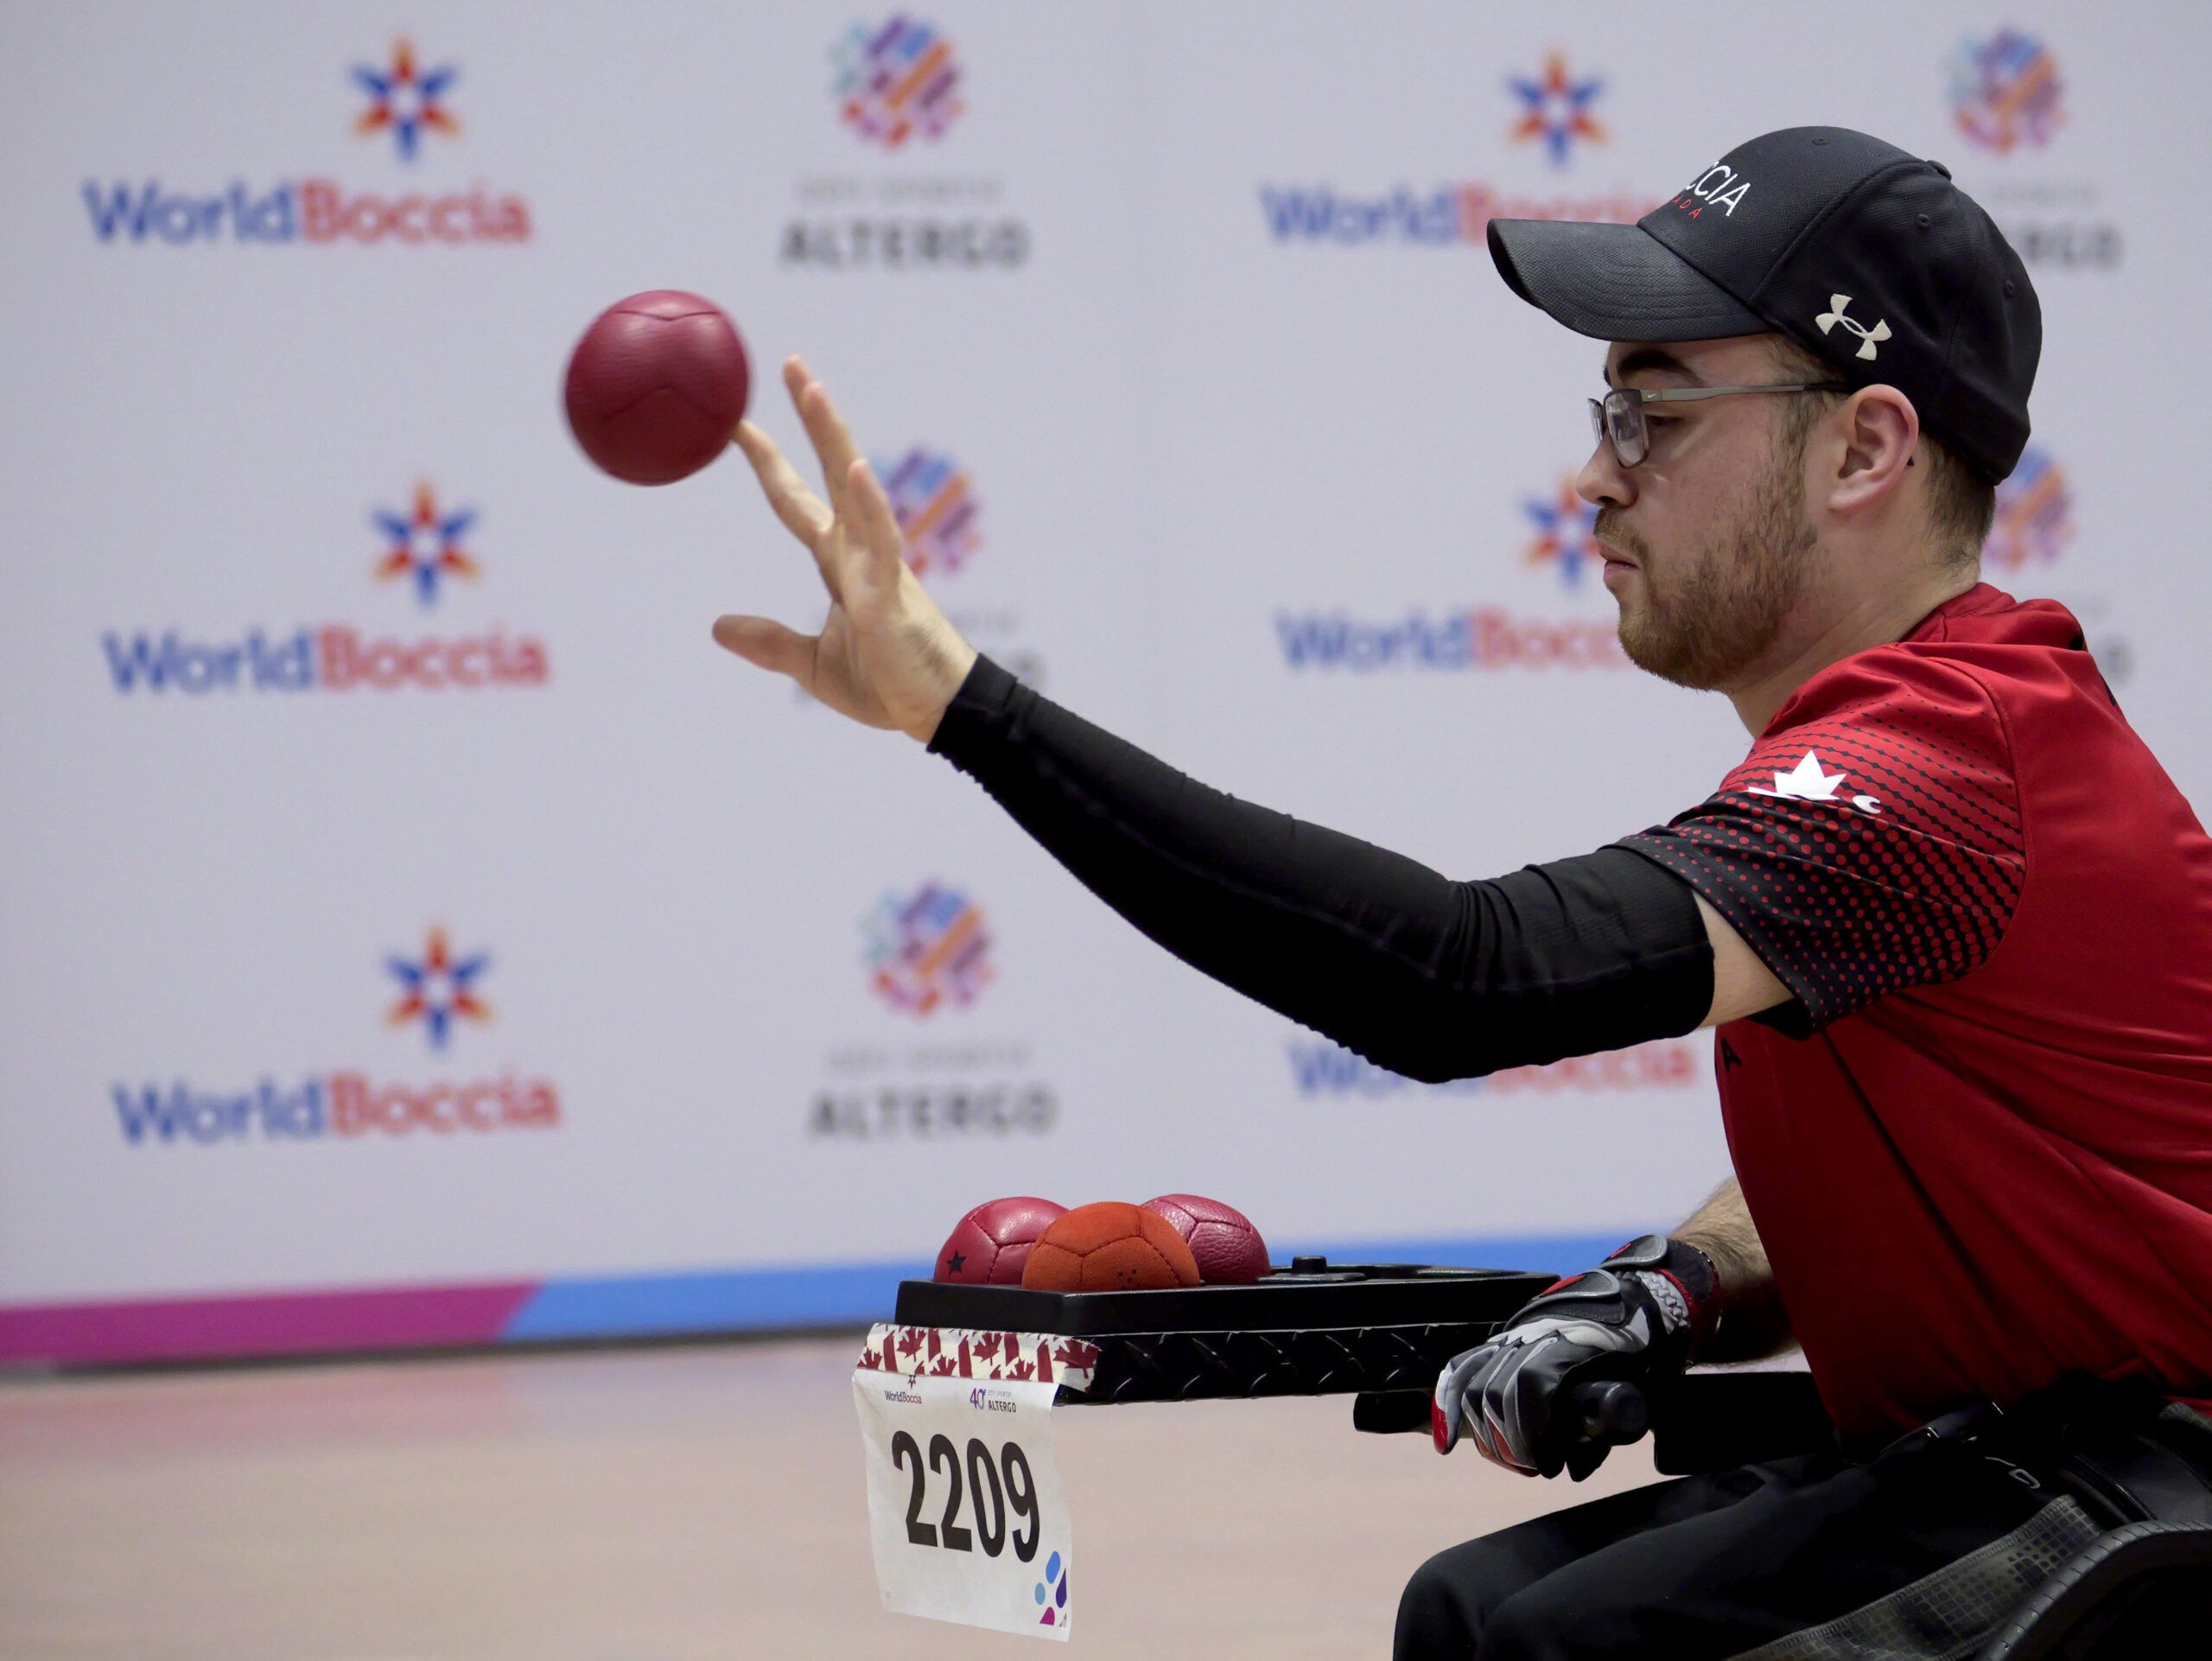 Un athlète en fauteuil roulant lance une balle de boccia.